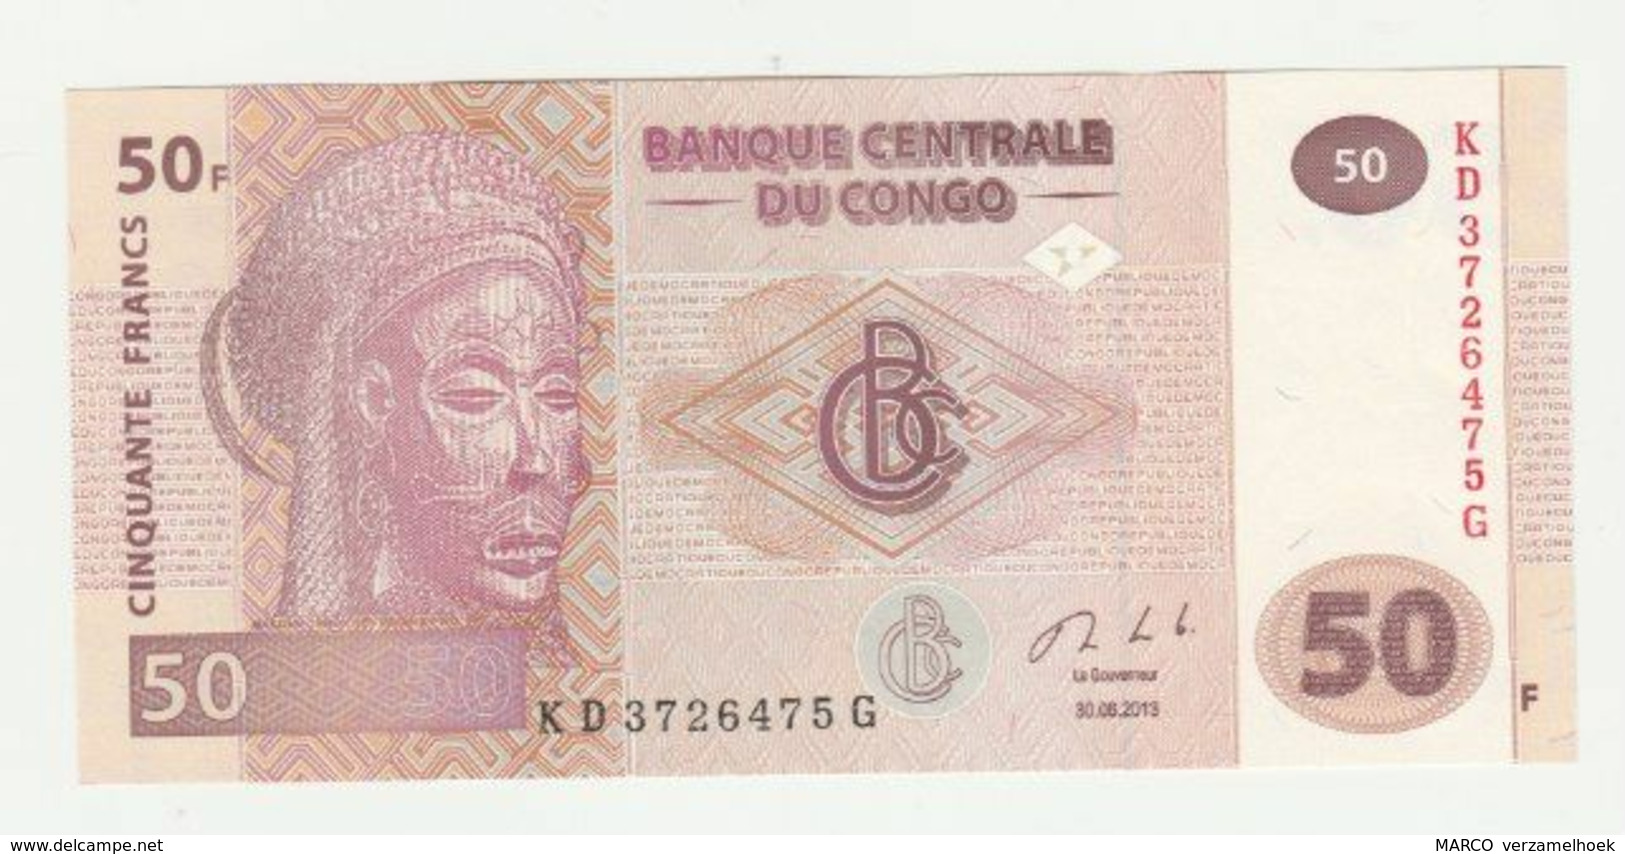 Banknote Banque Centrale Du Congo 50 Francs 2013 UNC - República Democrática Del Congo & Zaire